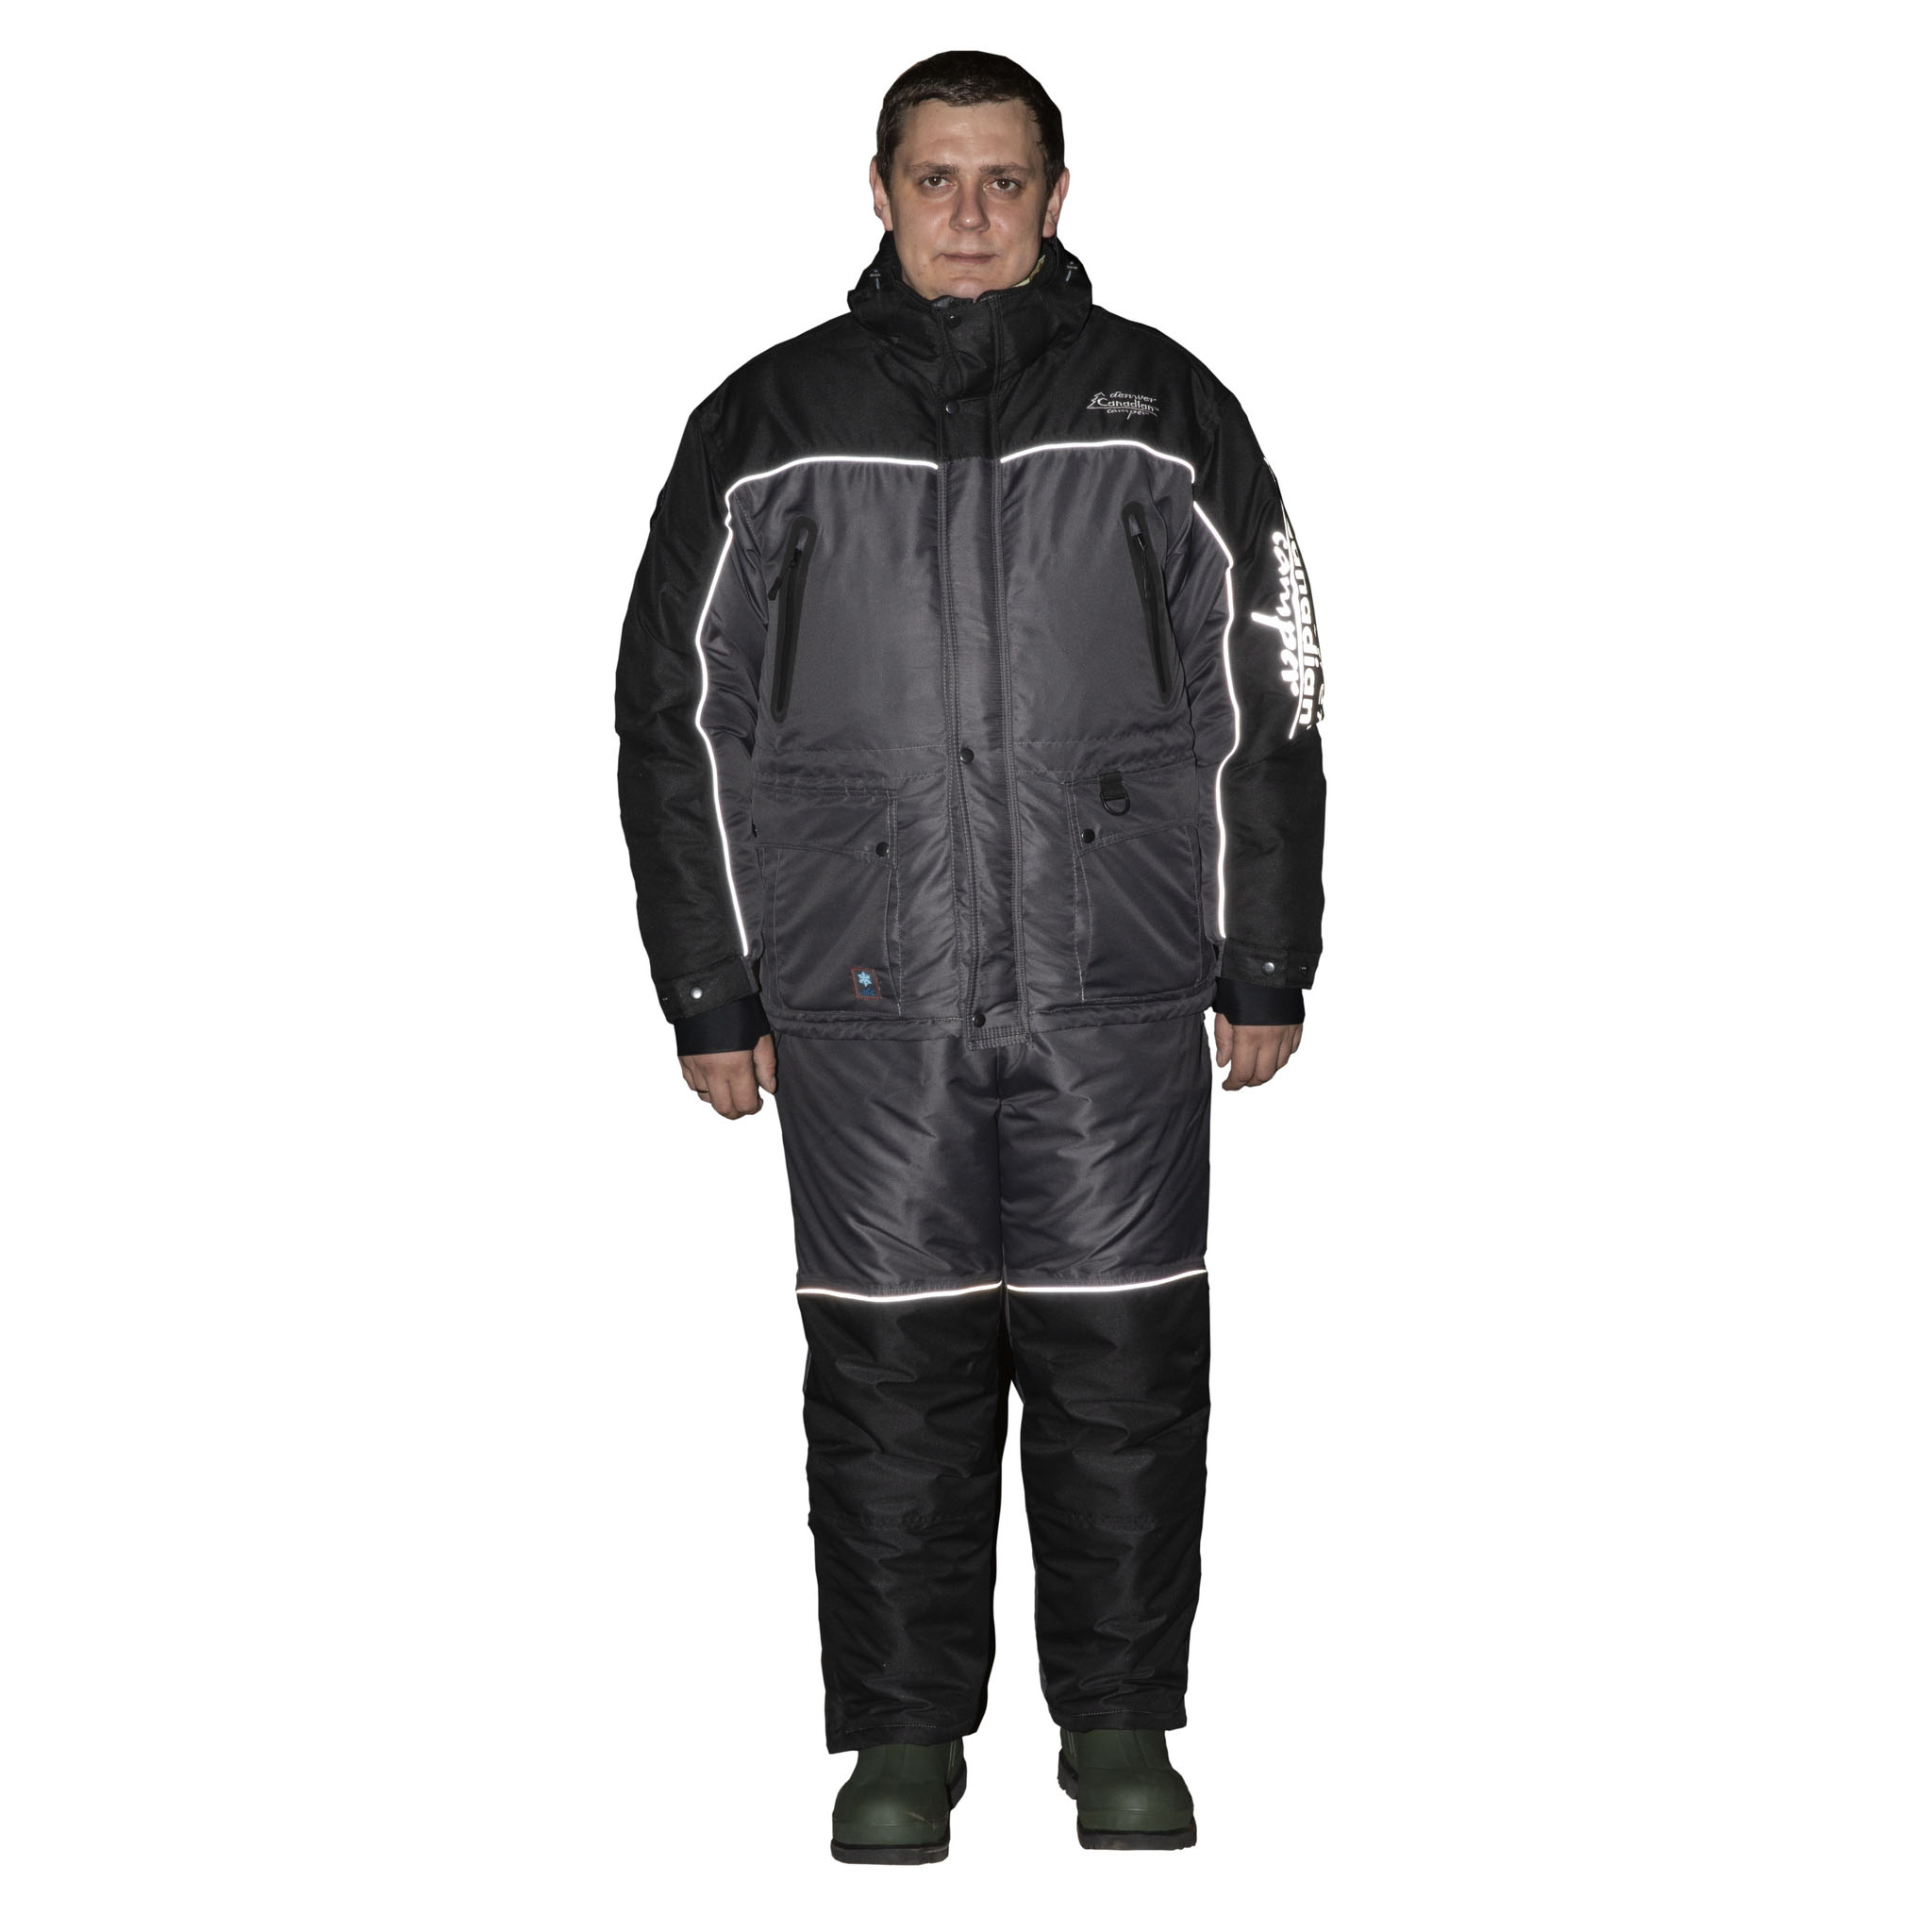 фото Костюм рыболовный зимний canadian camper denwer pro (куртка+брюки) цвет black / gray, m